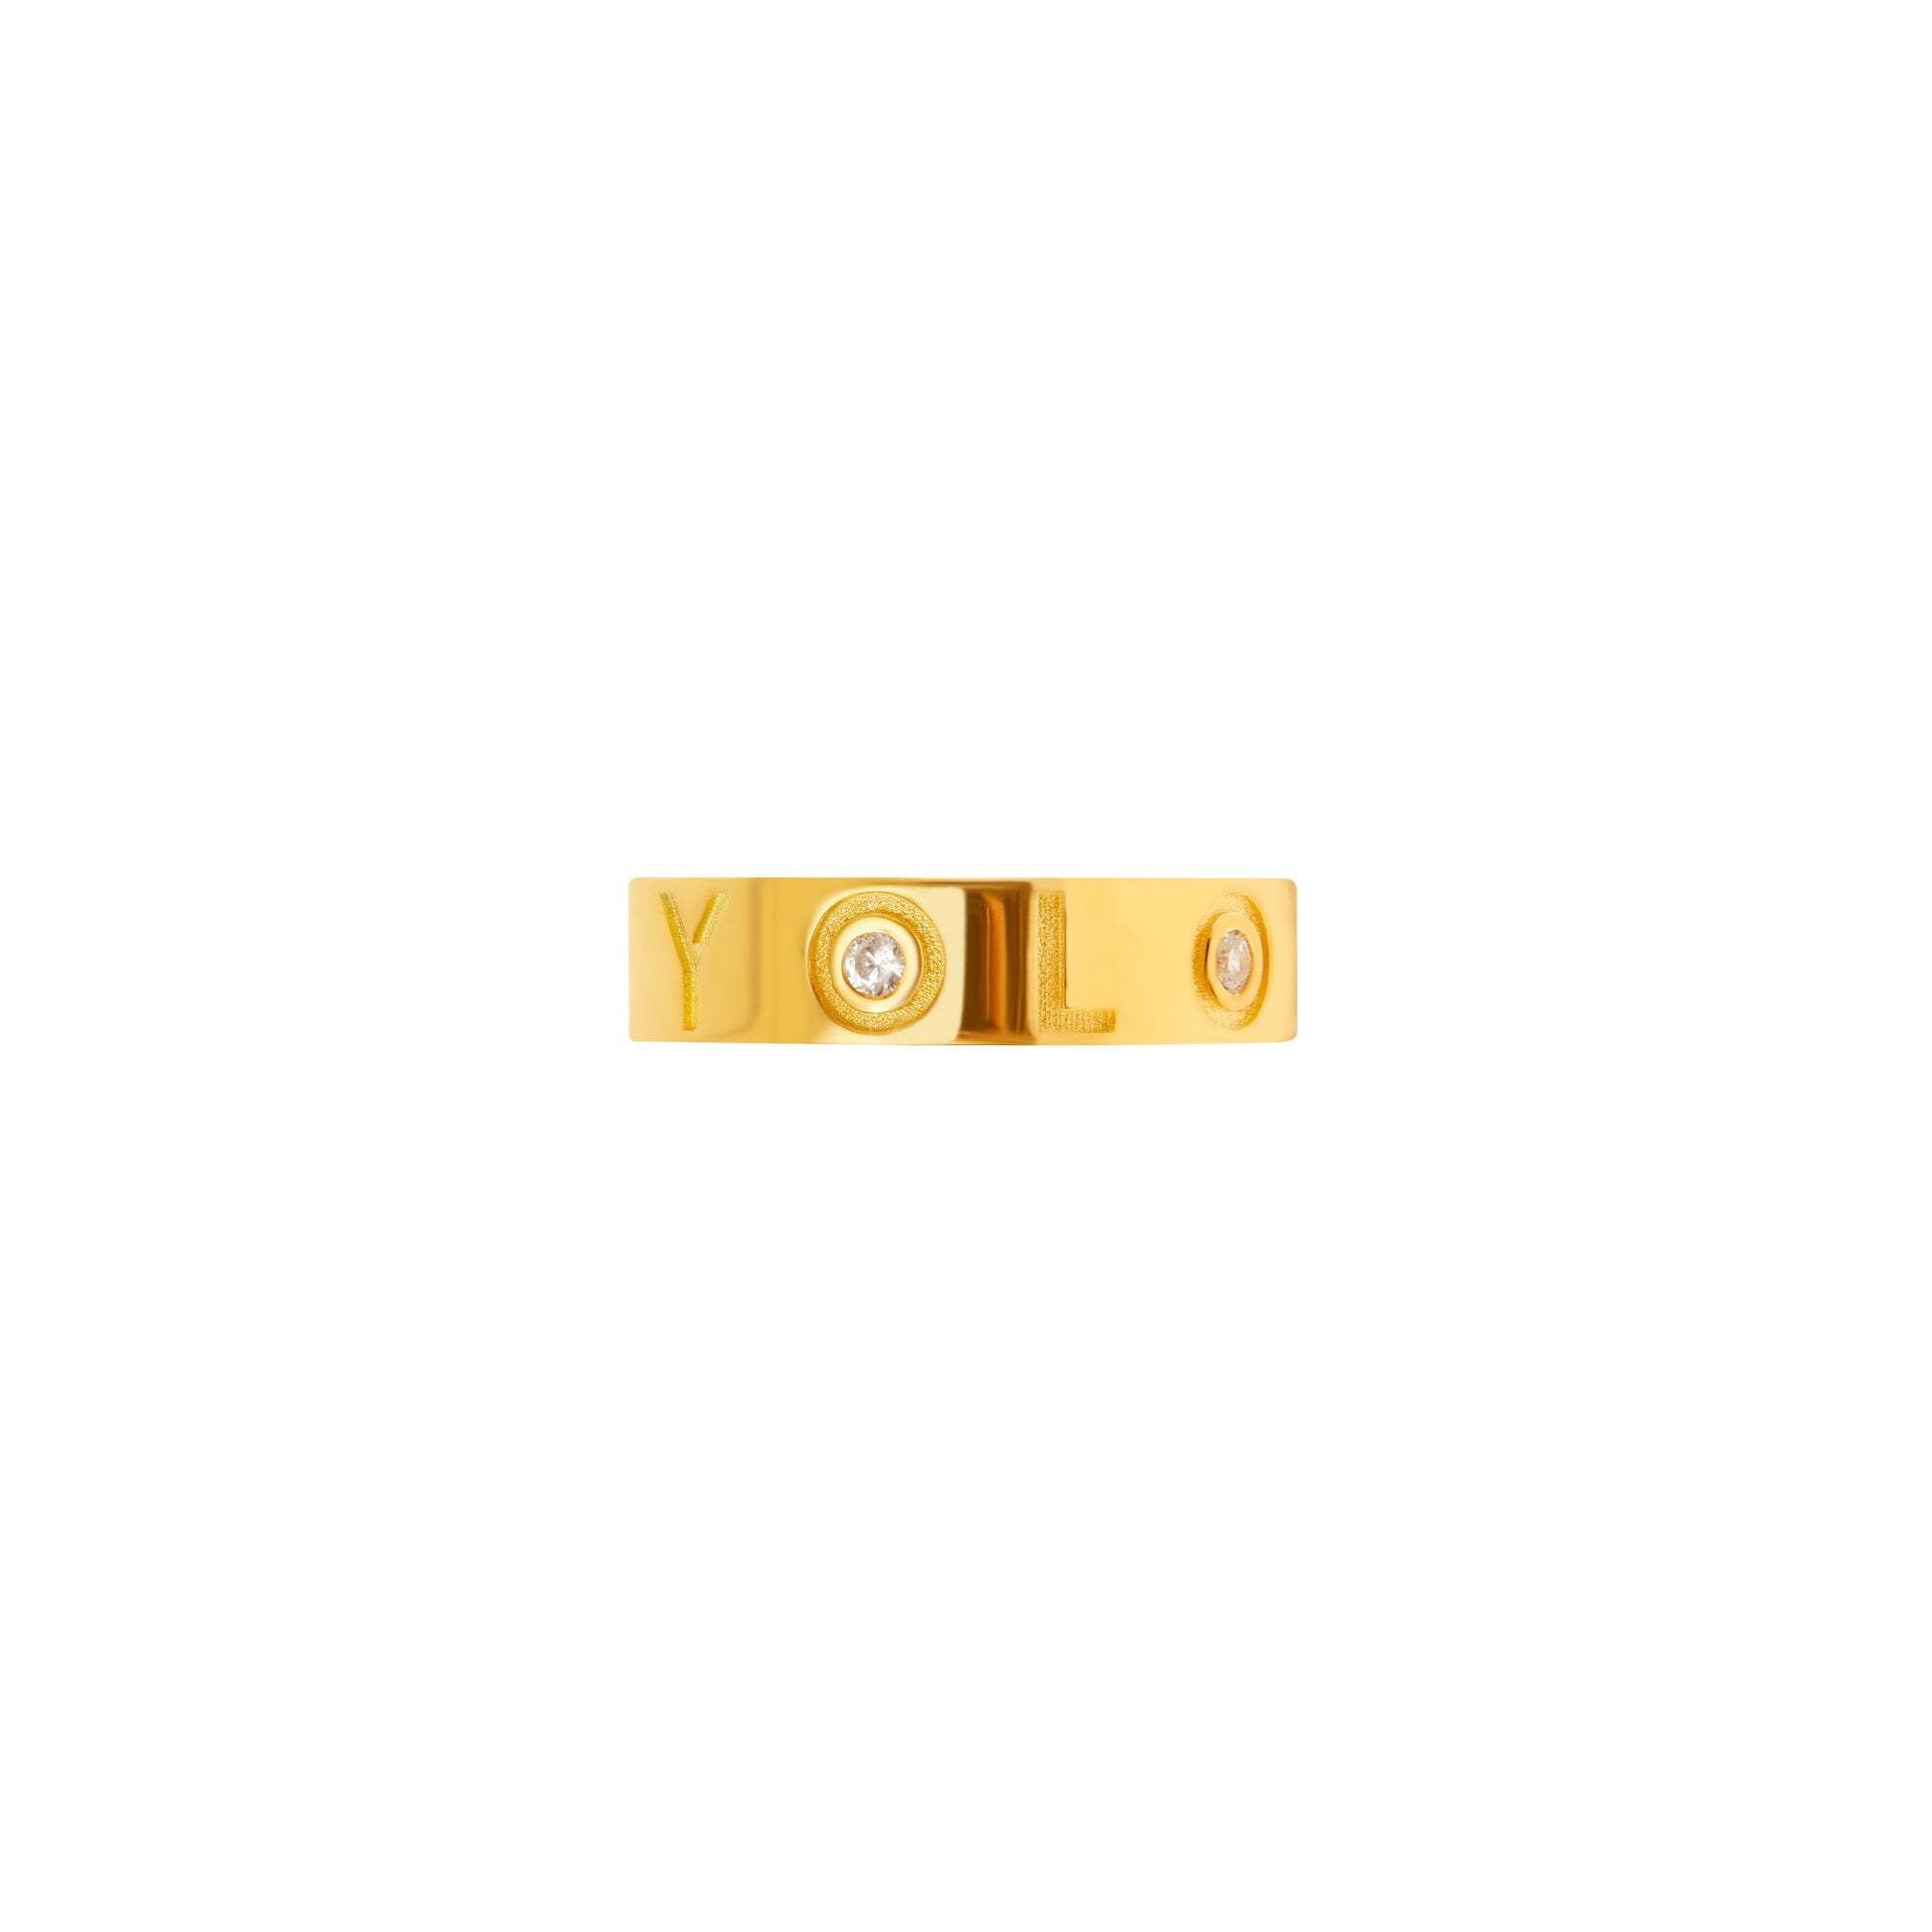 Ring 'Reminder' – YOLO